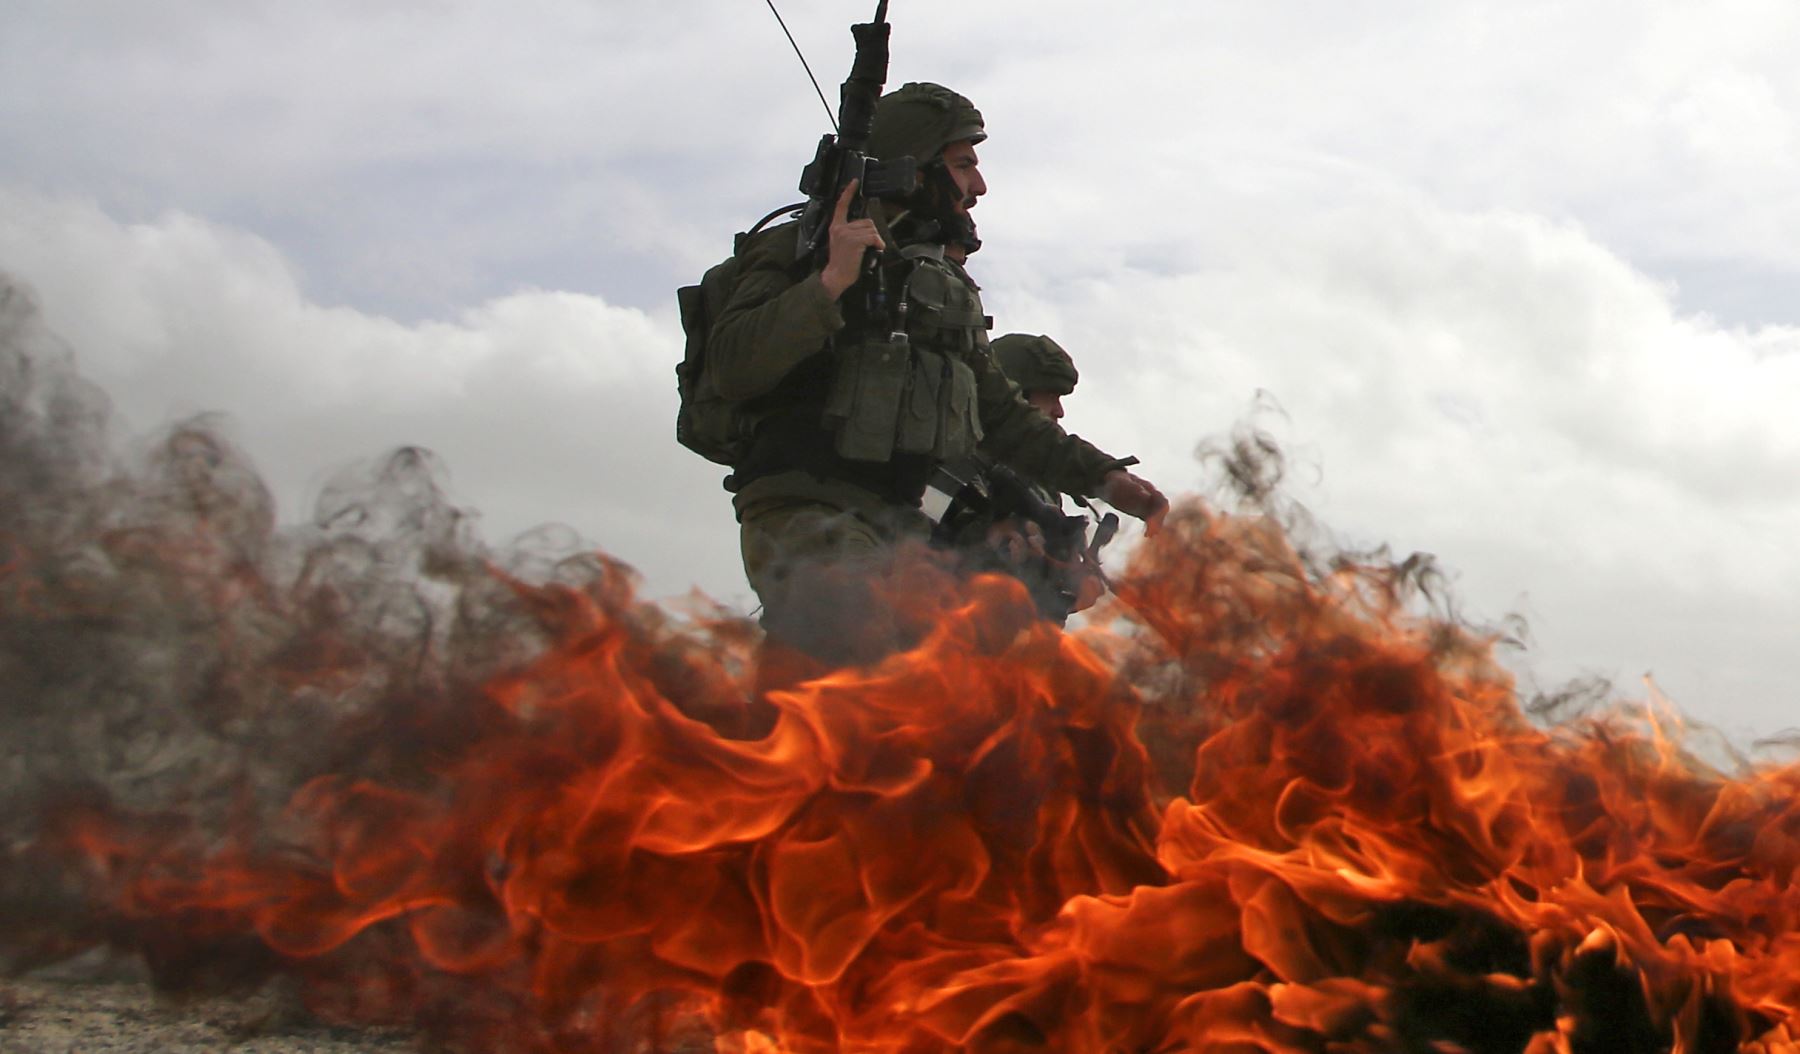 Soldados israelíes pasan junto a neumáticos en llamas durante enfrentamientos con manifestantes palestinos luego de una manifestación contra asentamientos judíos en la aldea de Urif en Cisjordania, al sur de Nablus. AFP